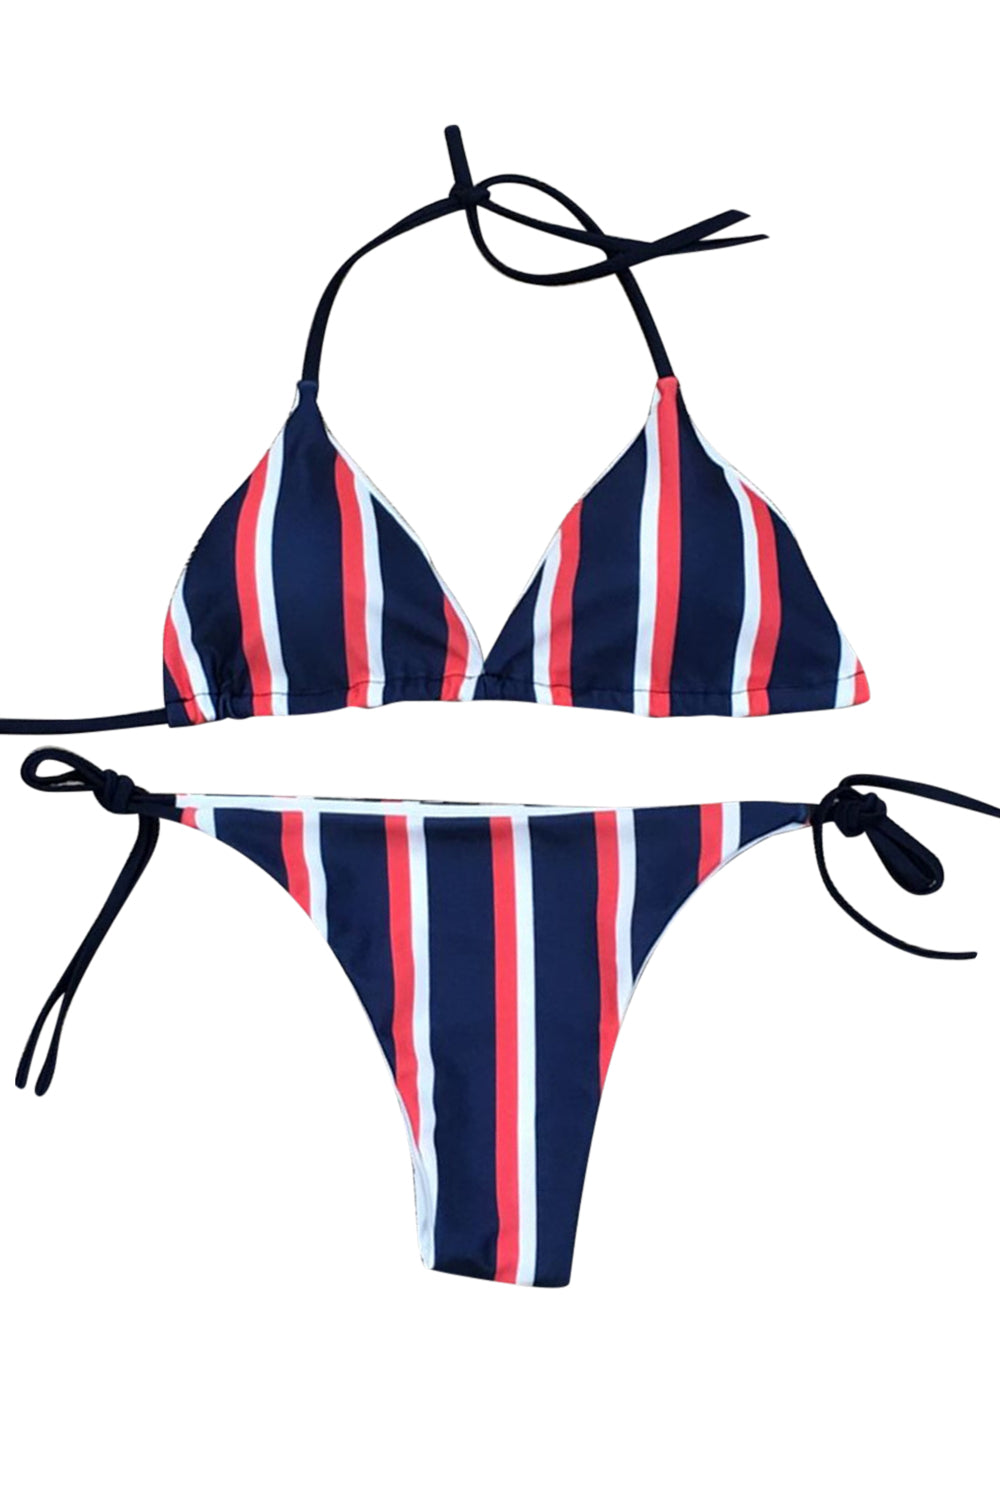 Iyasson Summer Beach Stripe Bikini Set